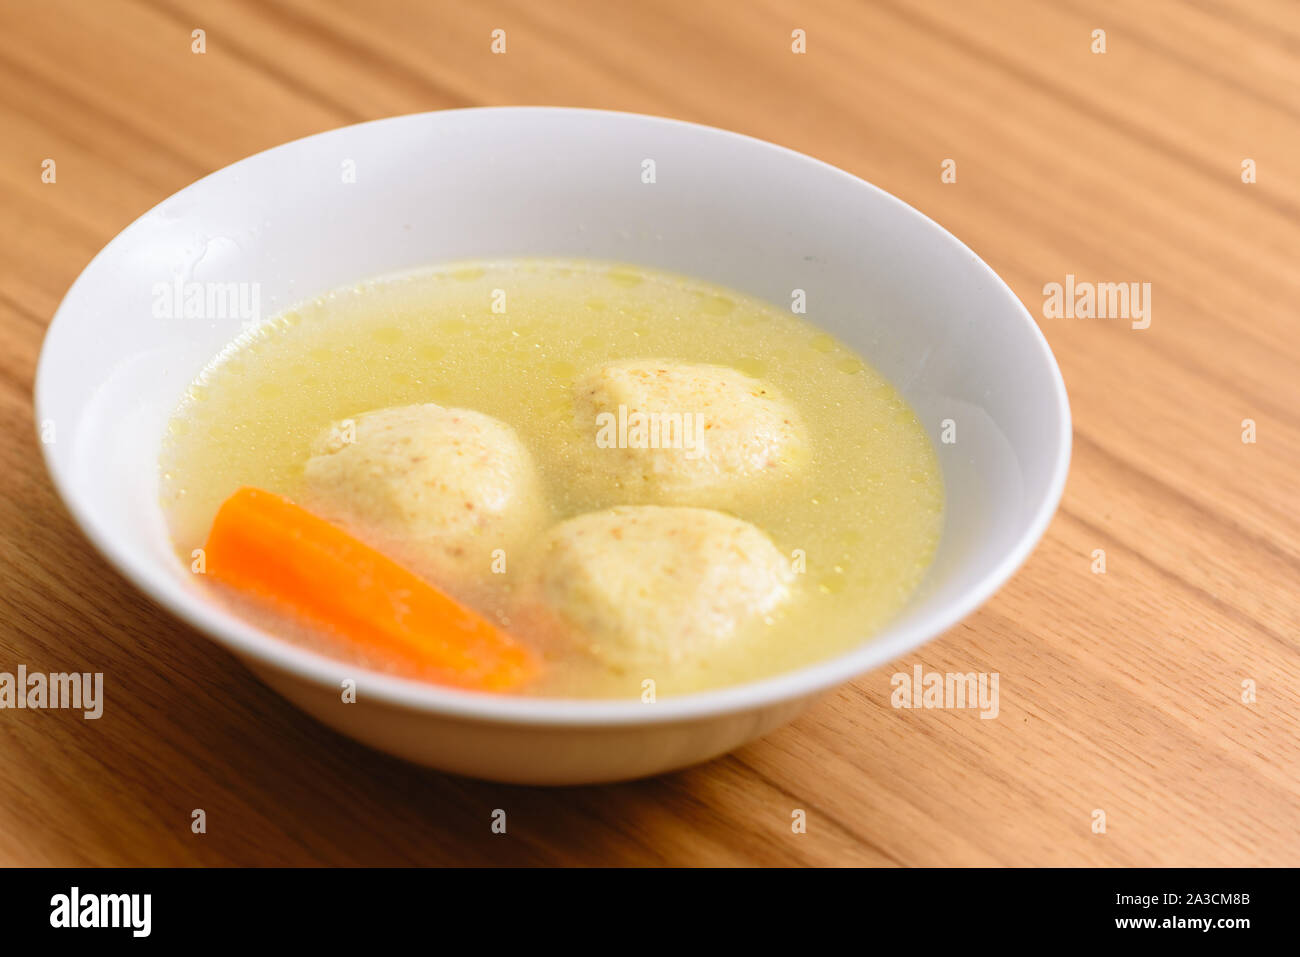 La matsa traditionnelle soupe kneidlach ball.bol blanc avec d'authentiques matzo ball goût poulet soupe bouillon tradition alimentaire pour la Pâque juive et de tous les jours. Banque D'Images